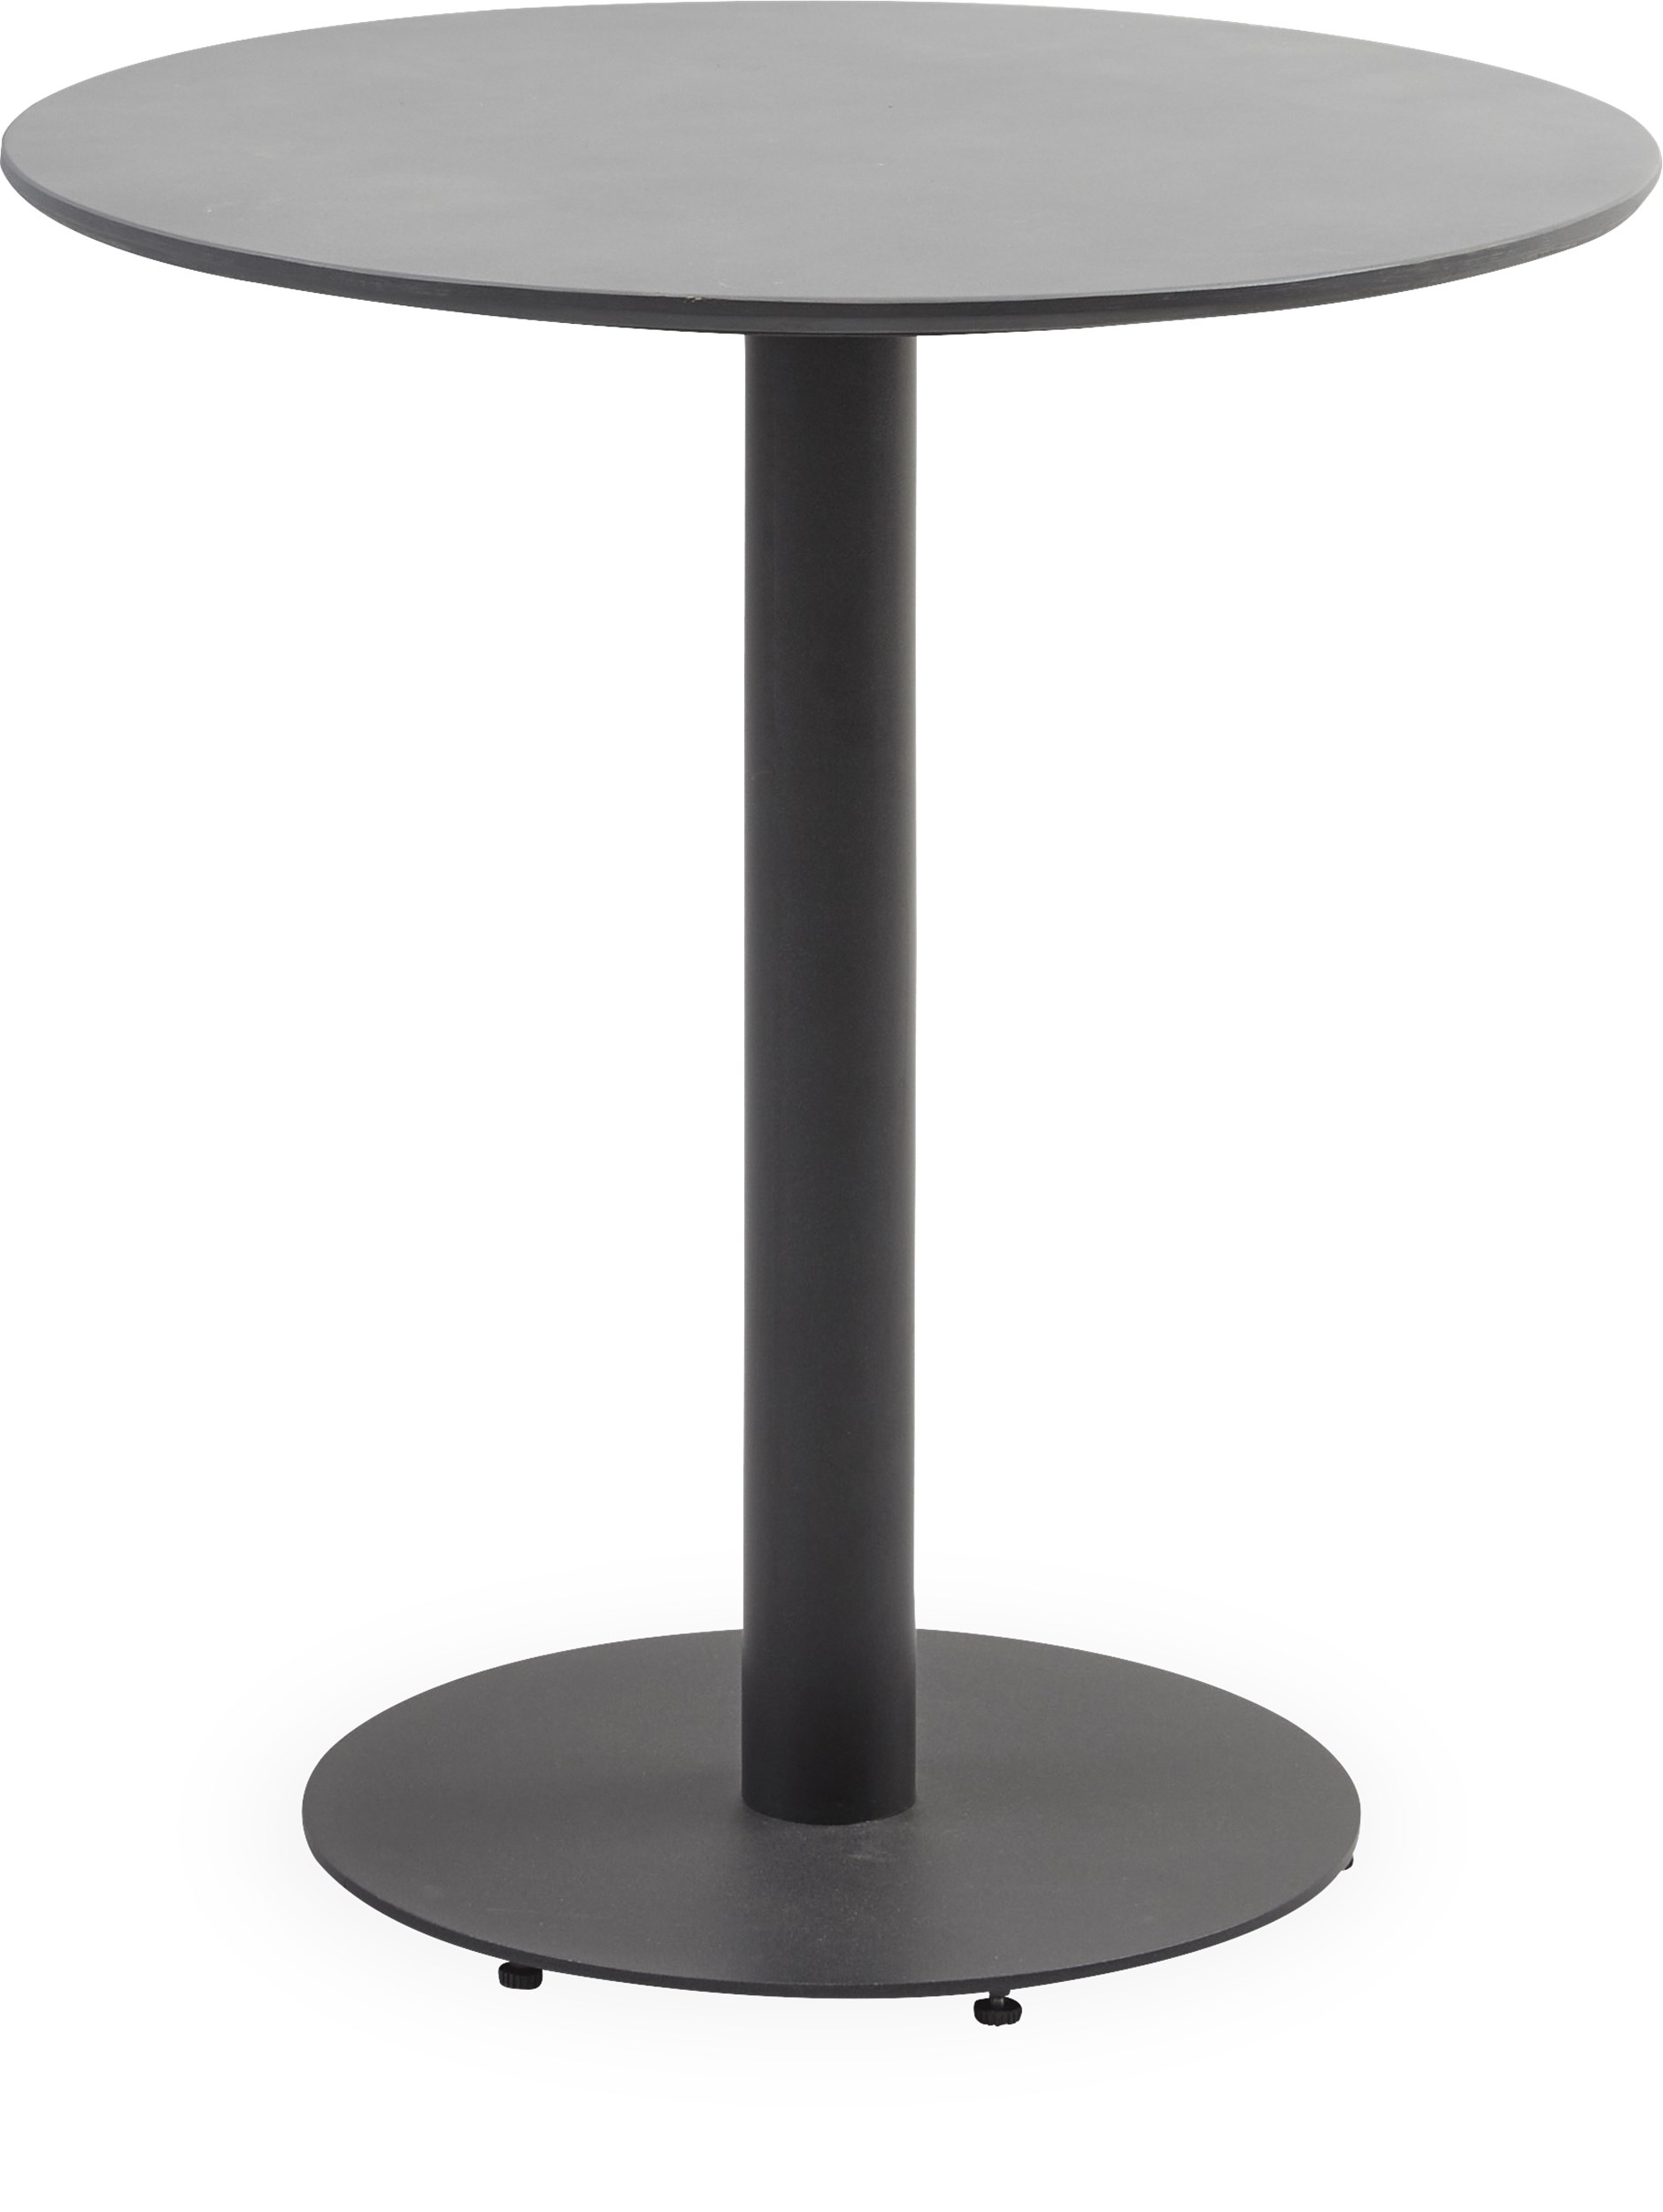 Arres Cafébord - Top i grå durafit og stel i sort pulverlakeret metal